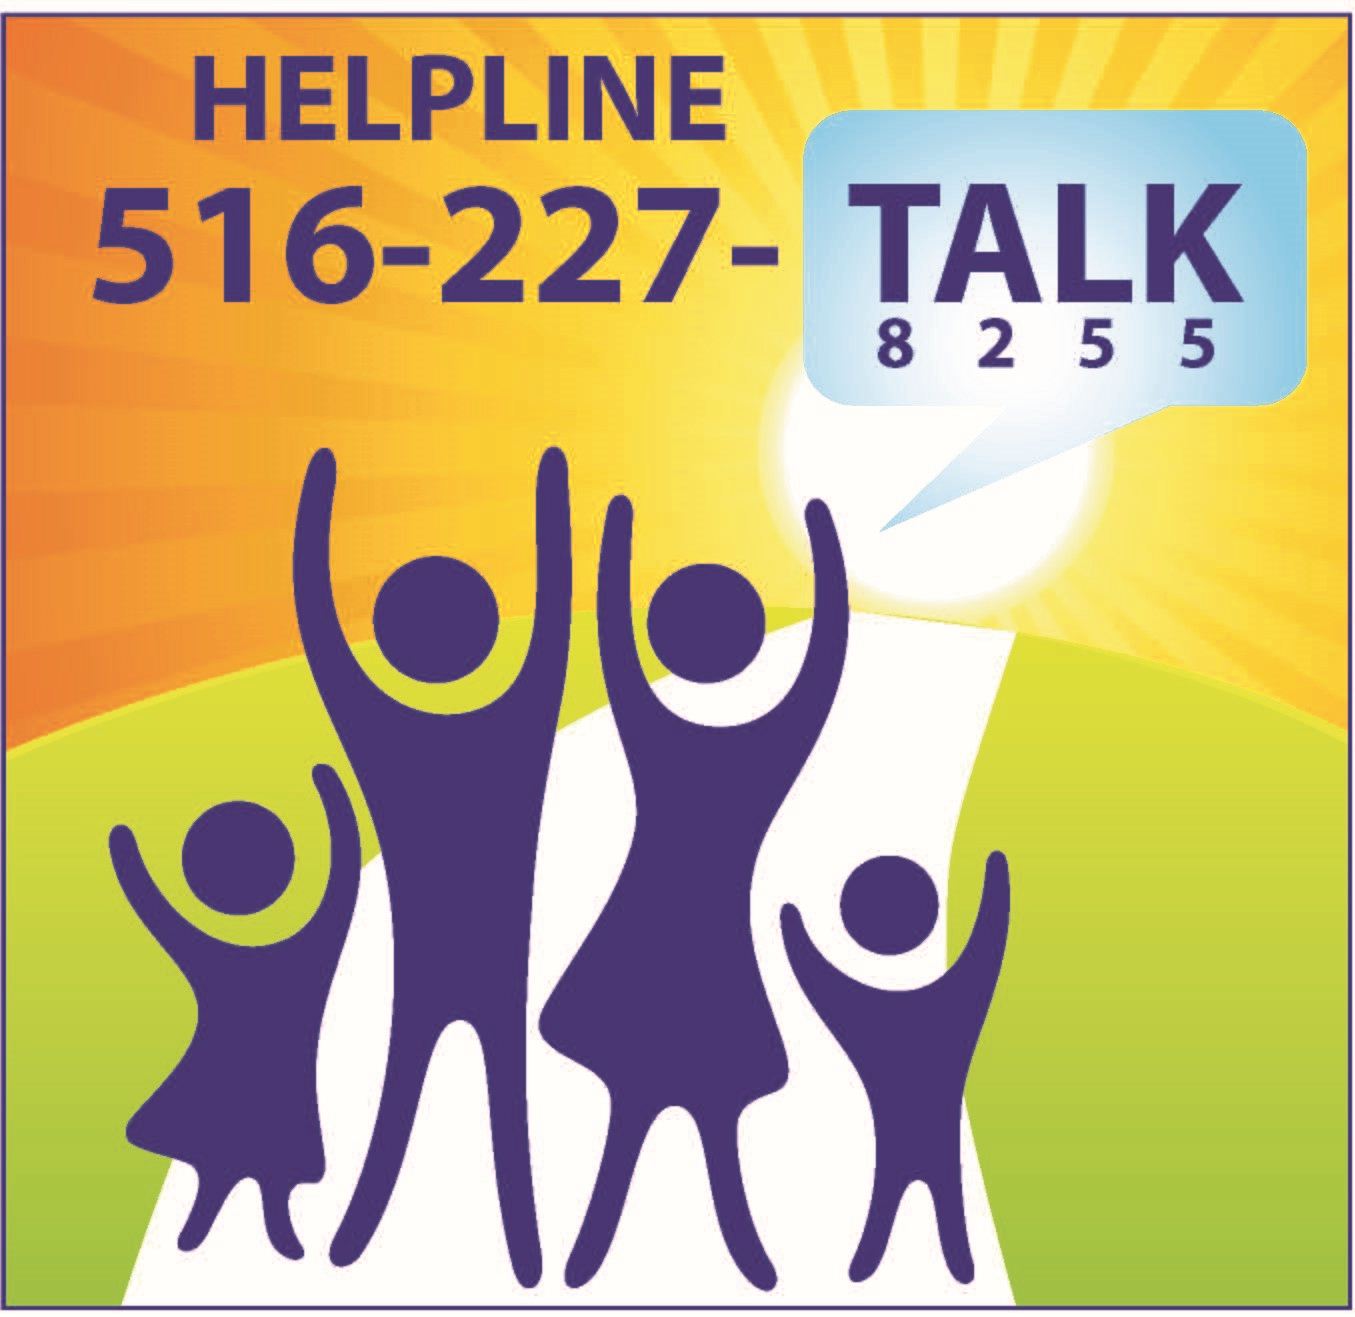 Nassau County 24/7 Behavioral Health Helpline (516) 227-TALK